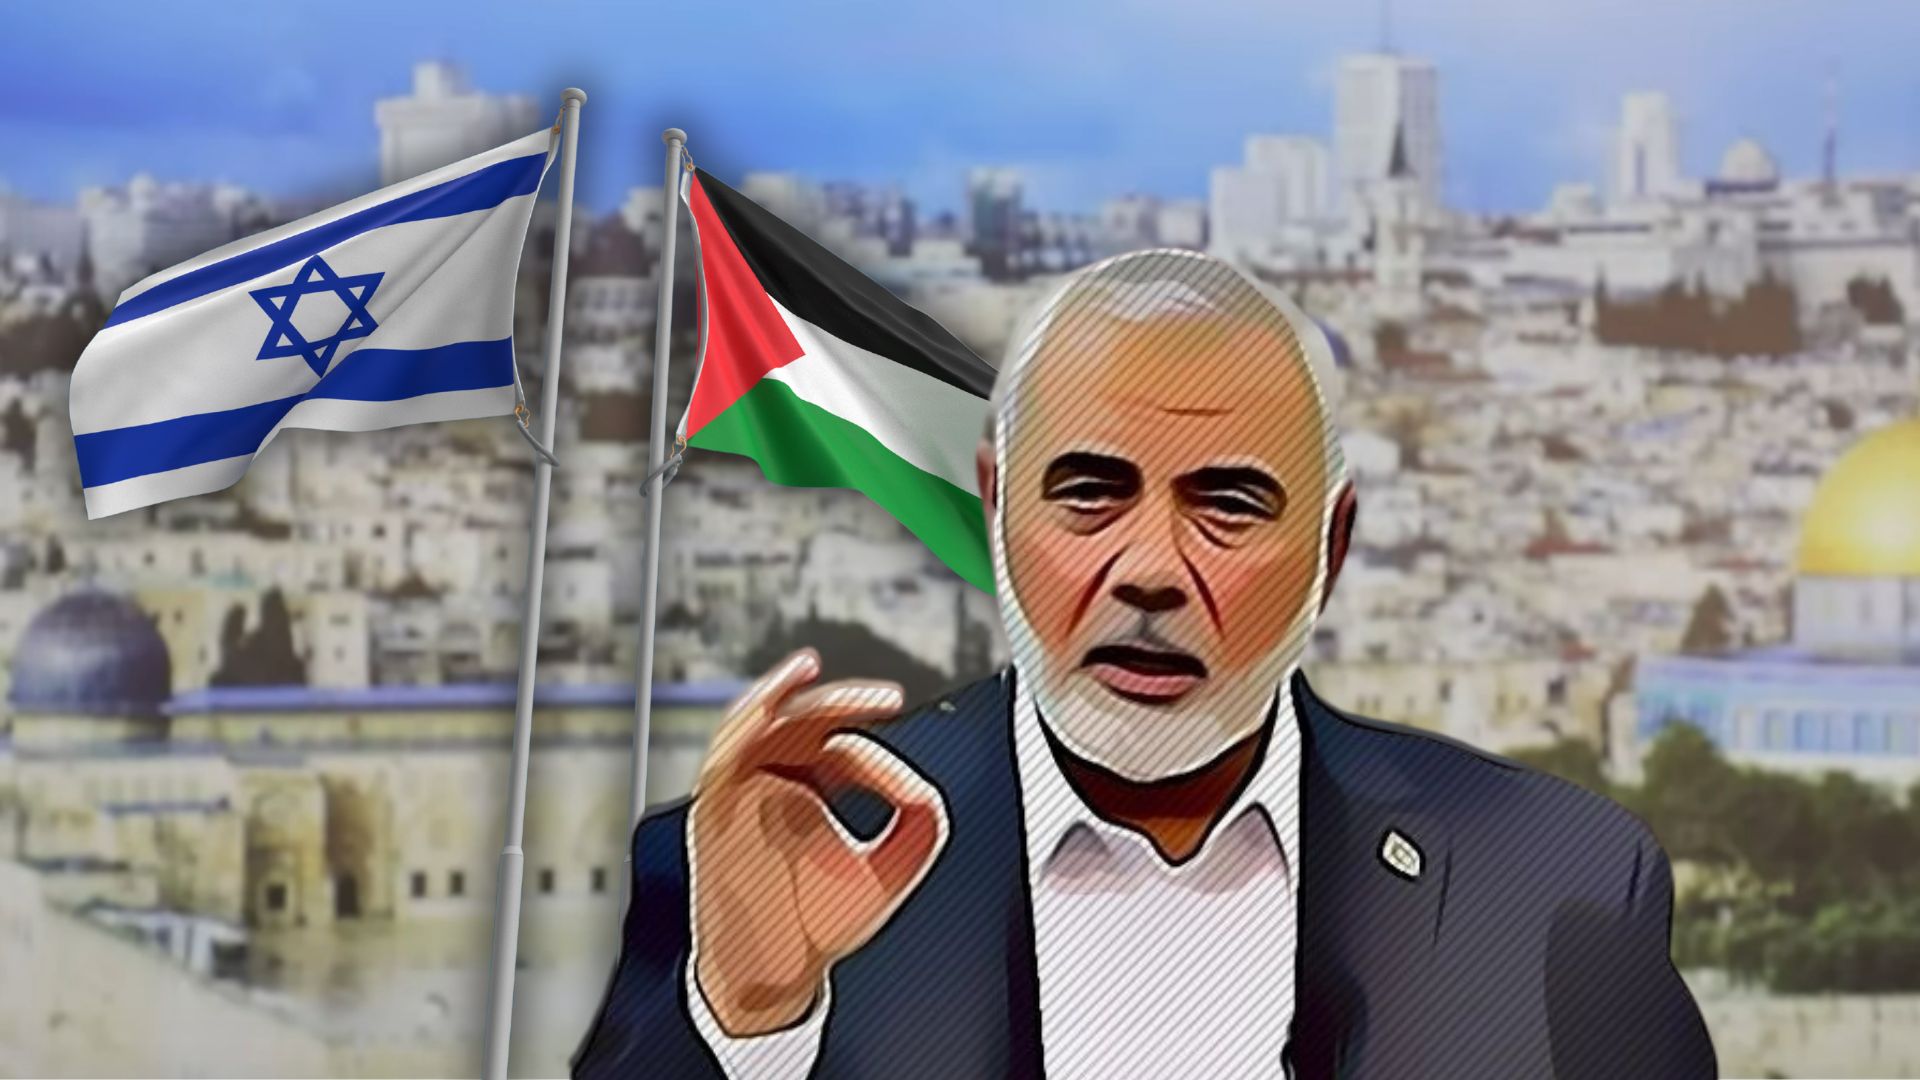 Accordo-fake: tutti felici di abboccare alla propaganda di Hamas